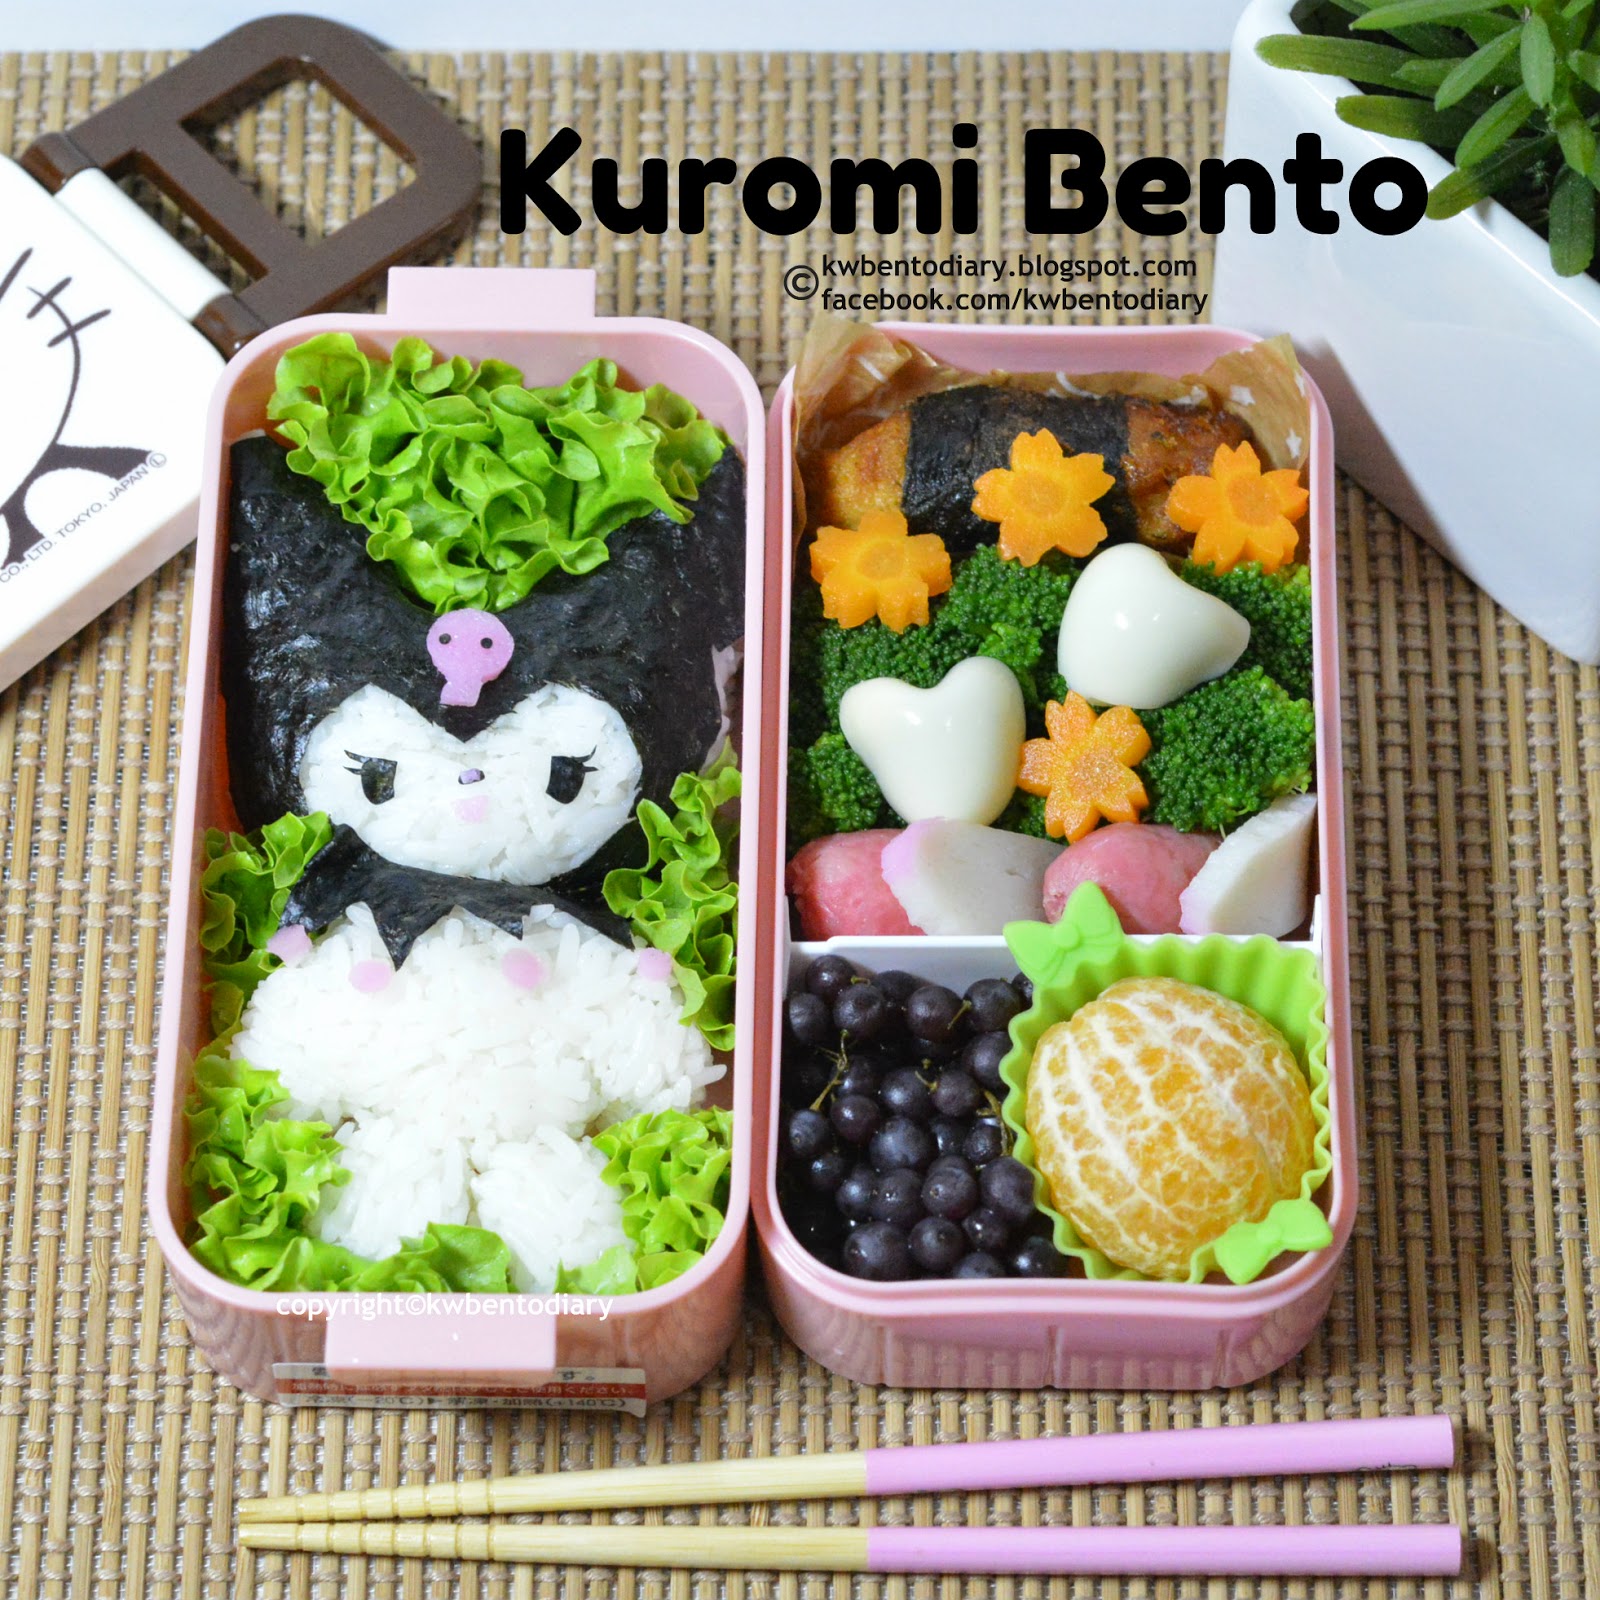 Kuromi got her wish!  Bento box, Bento, Bento box recipes